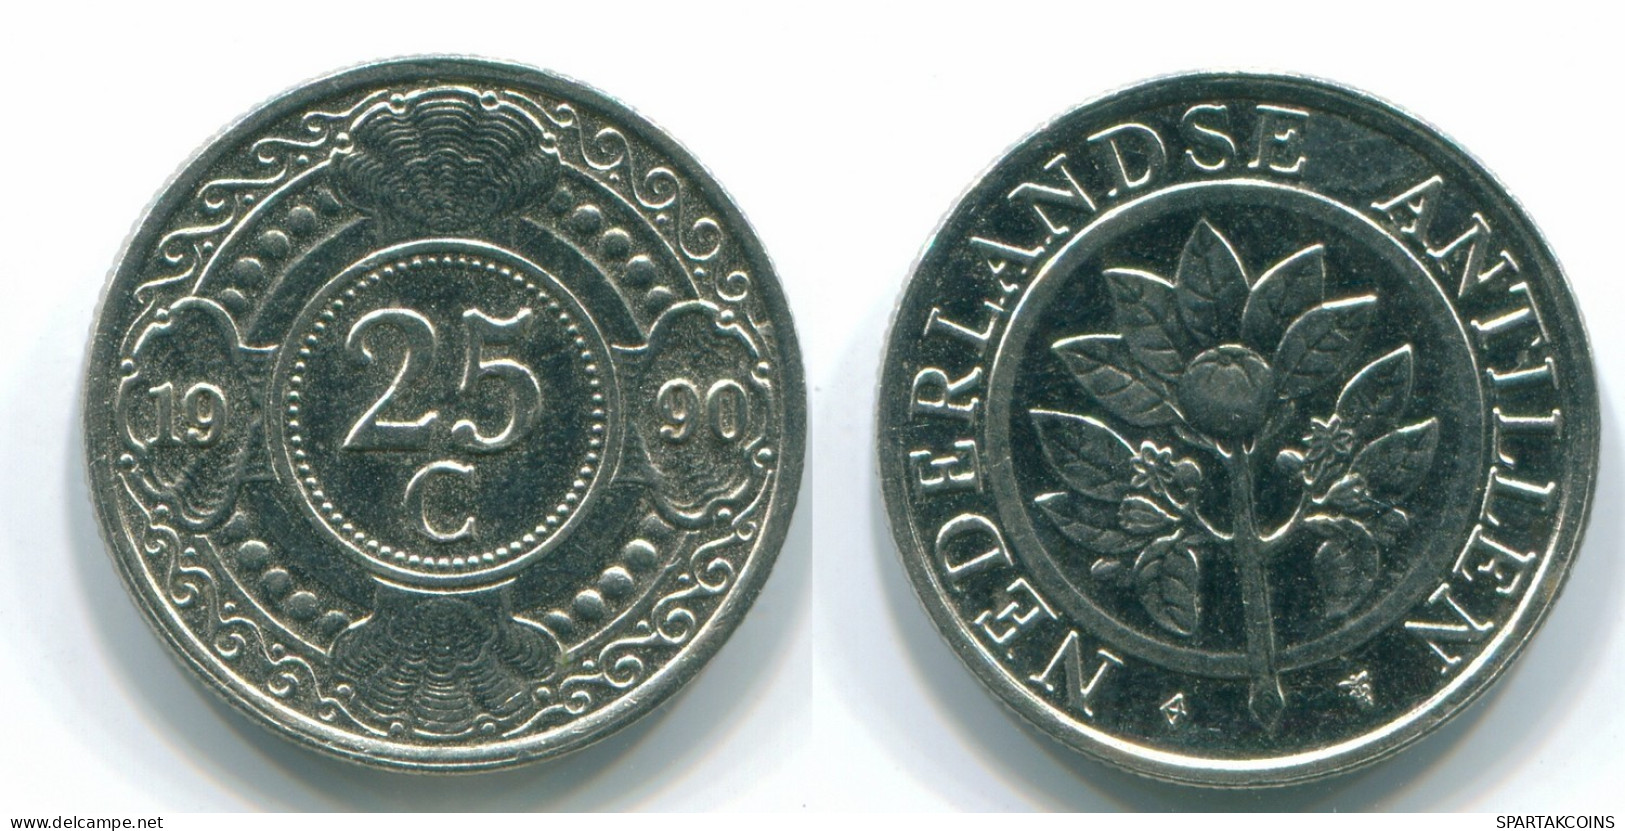 25 CENTS 1990 NETHERLANDS ANTILLES Nickel Colonial Coin #S11267.U.A - Antillas Neerlandesas